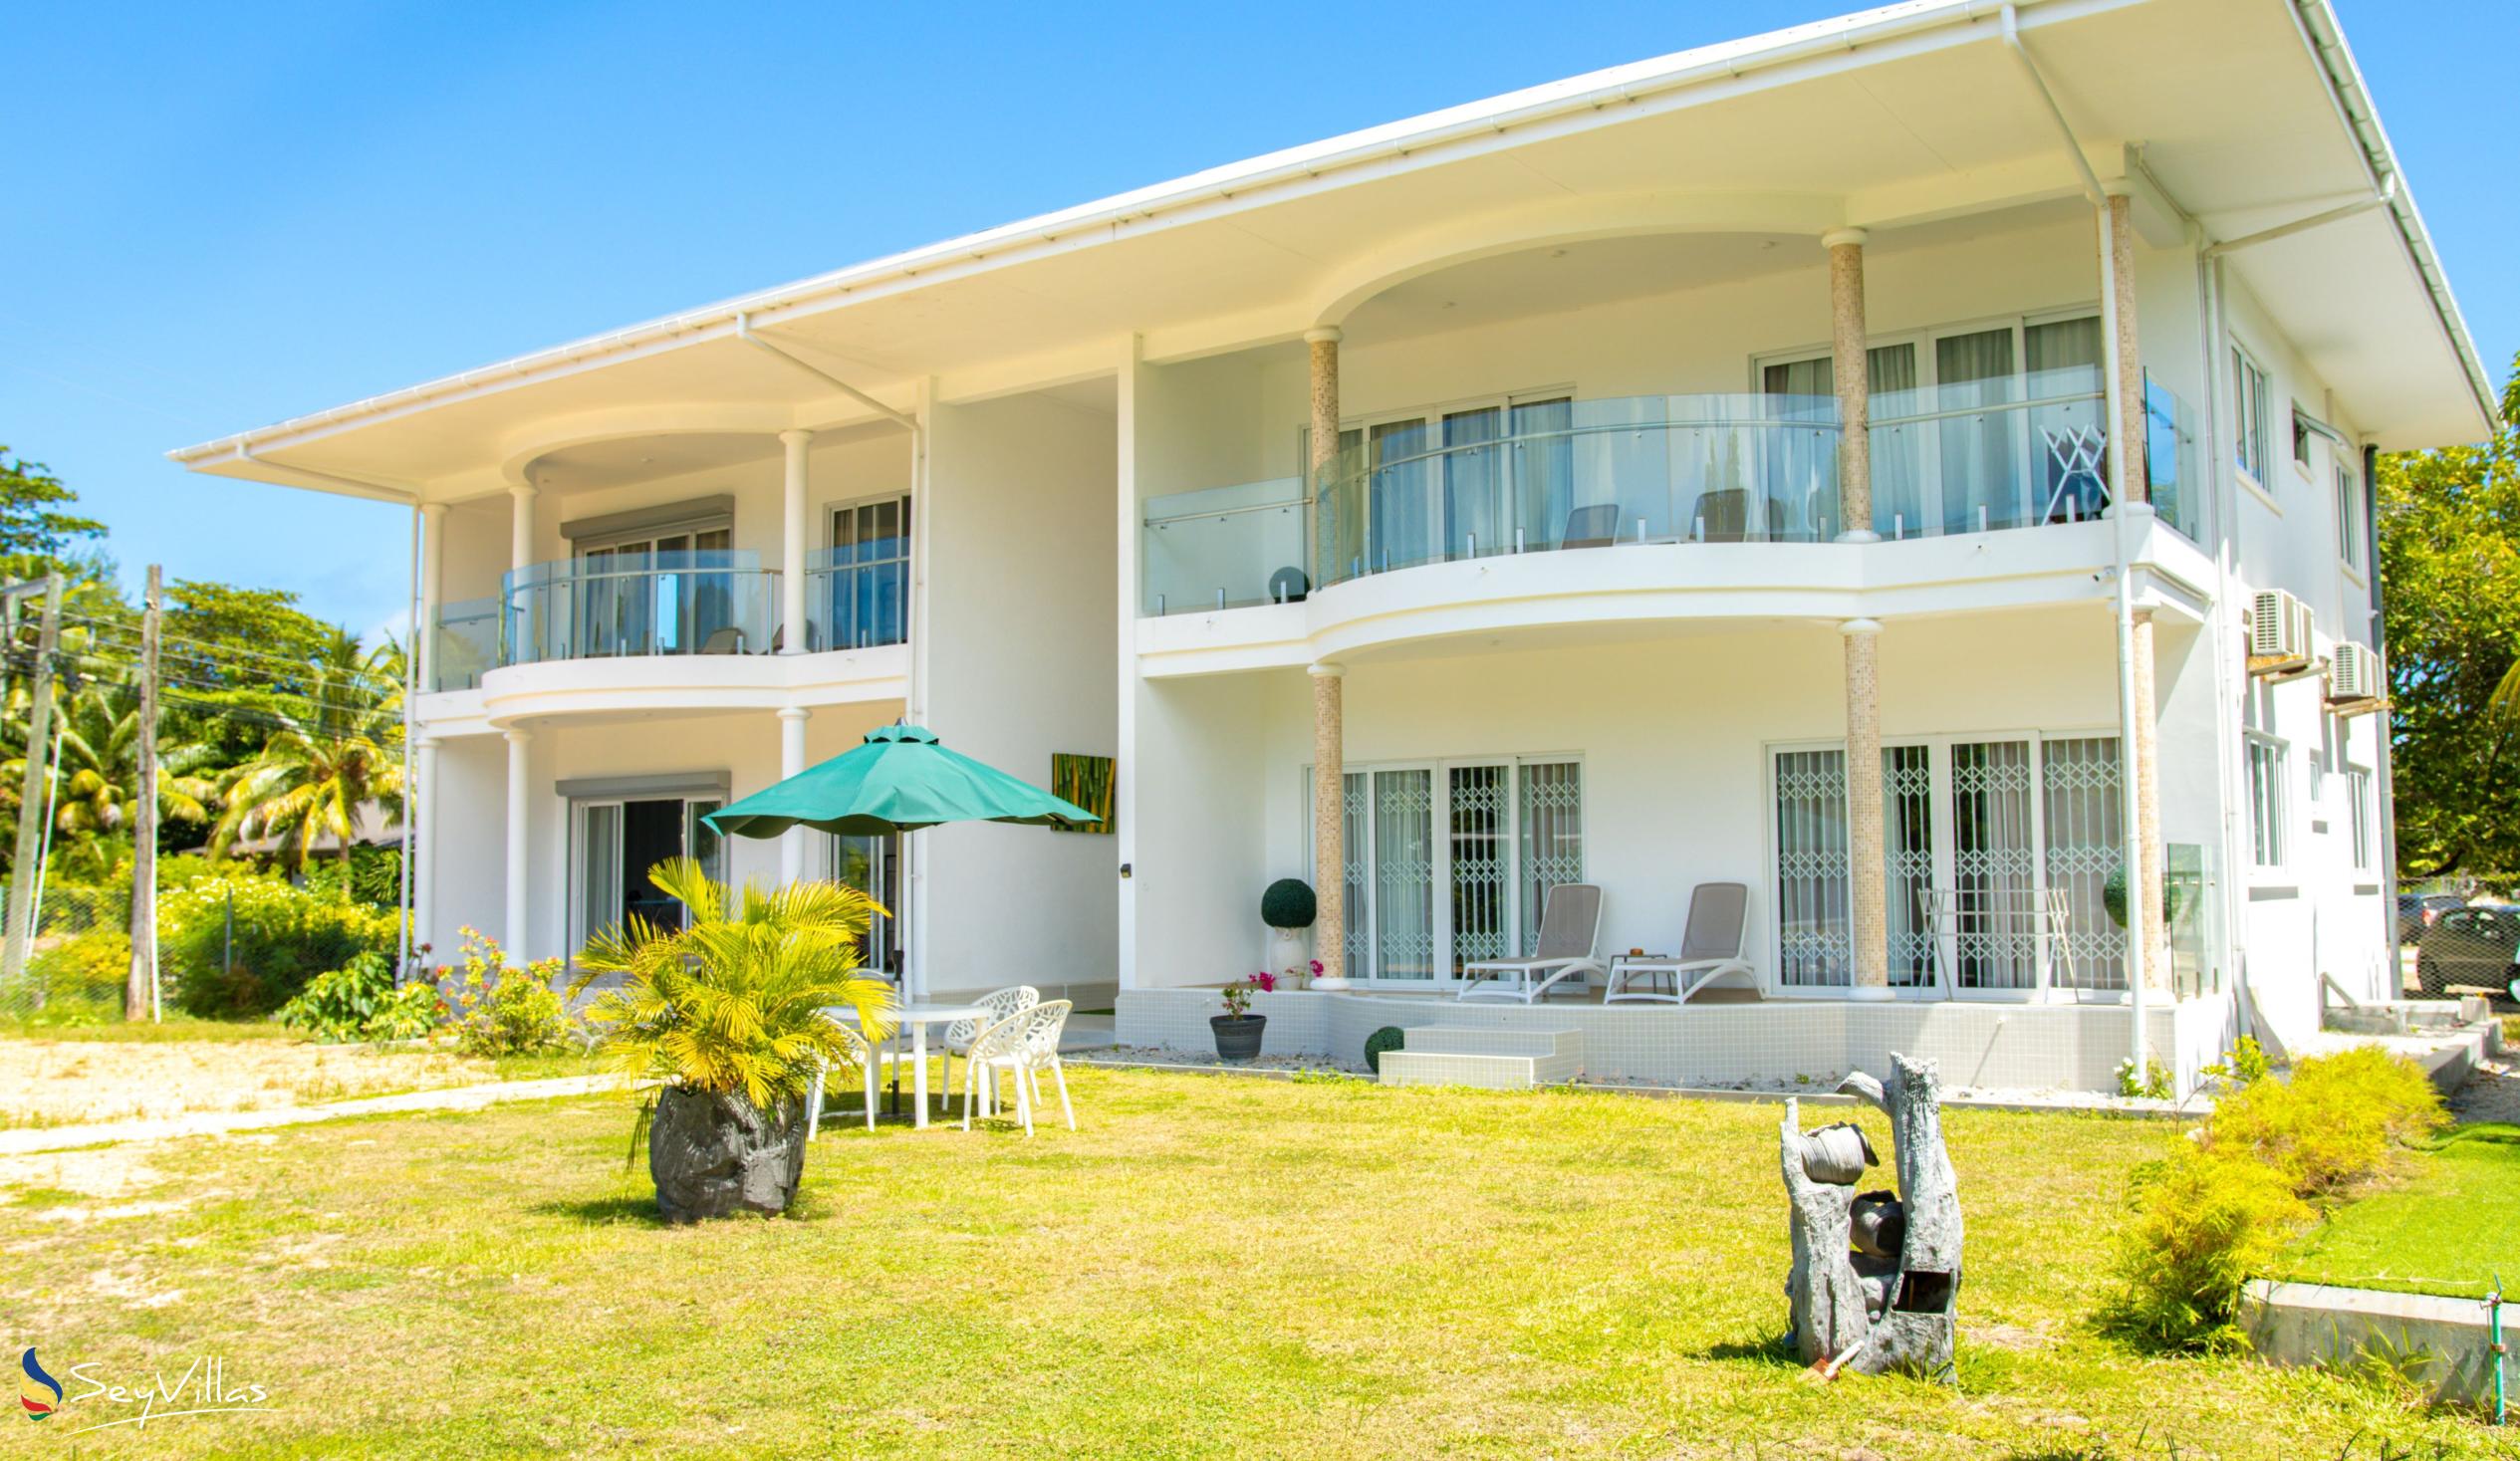 Foto 1: Tropic Villa Annex - Aussenbereich - Praslin (Seychellen)